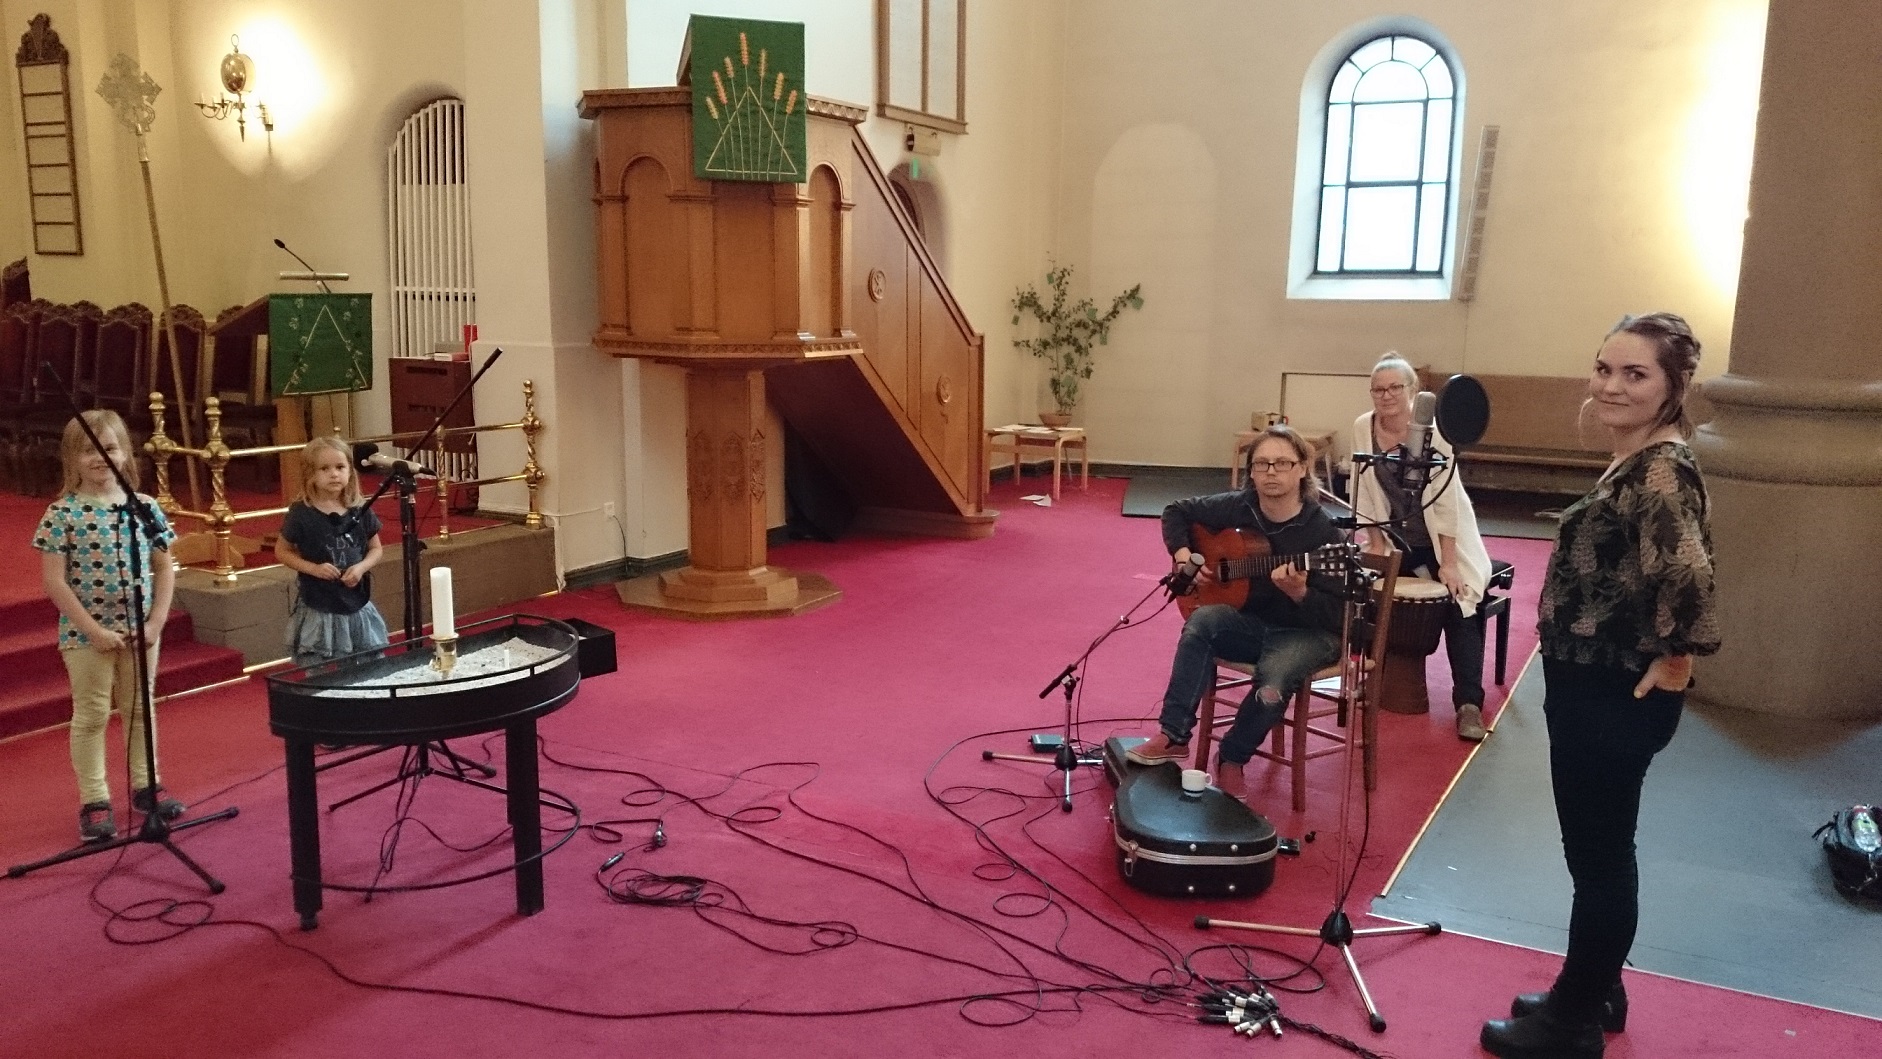 Plosiv gjør opptak for KIA i Grønland kirke